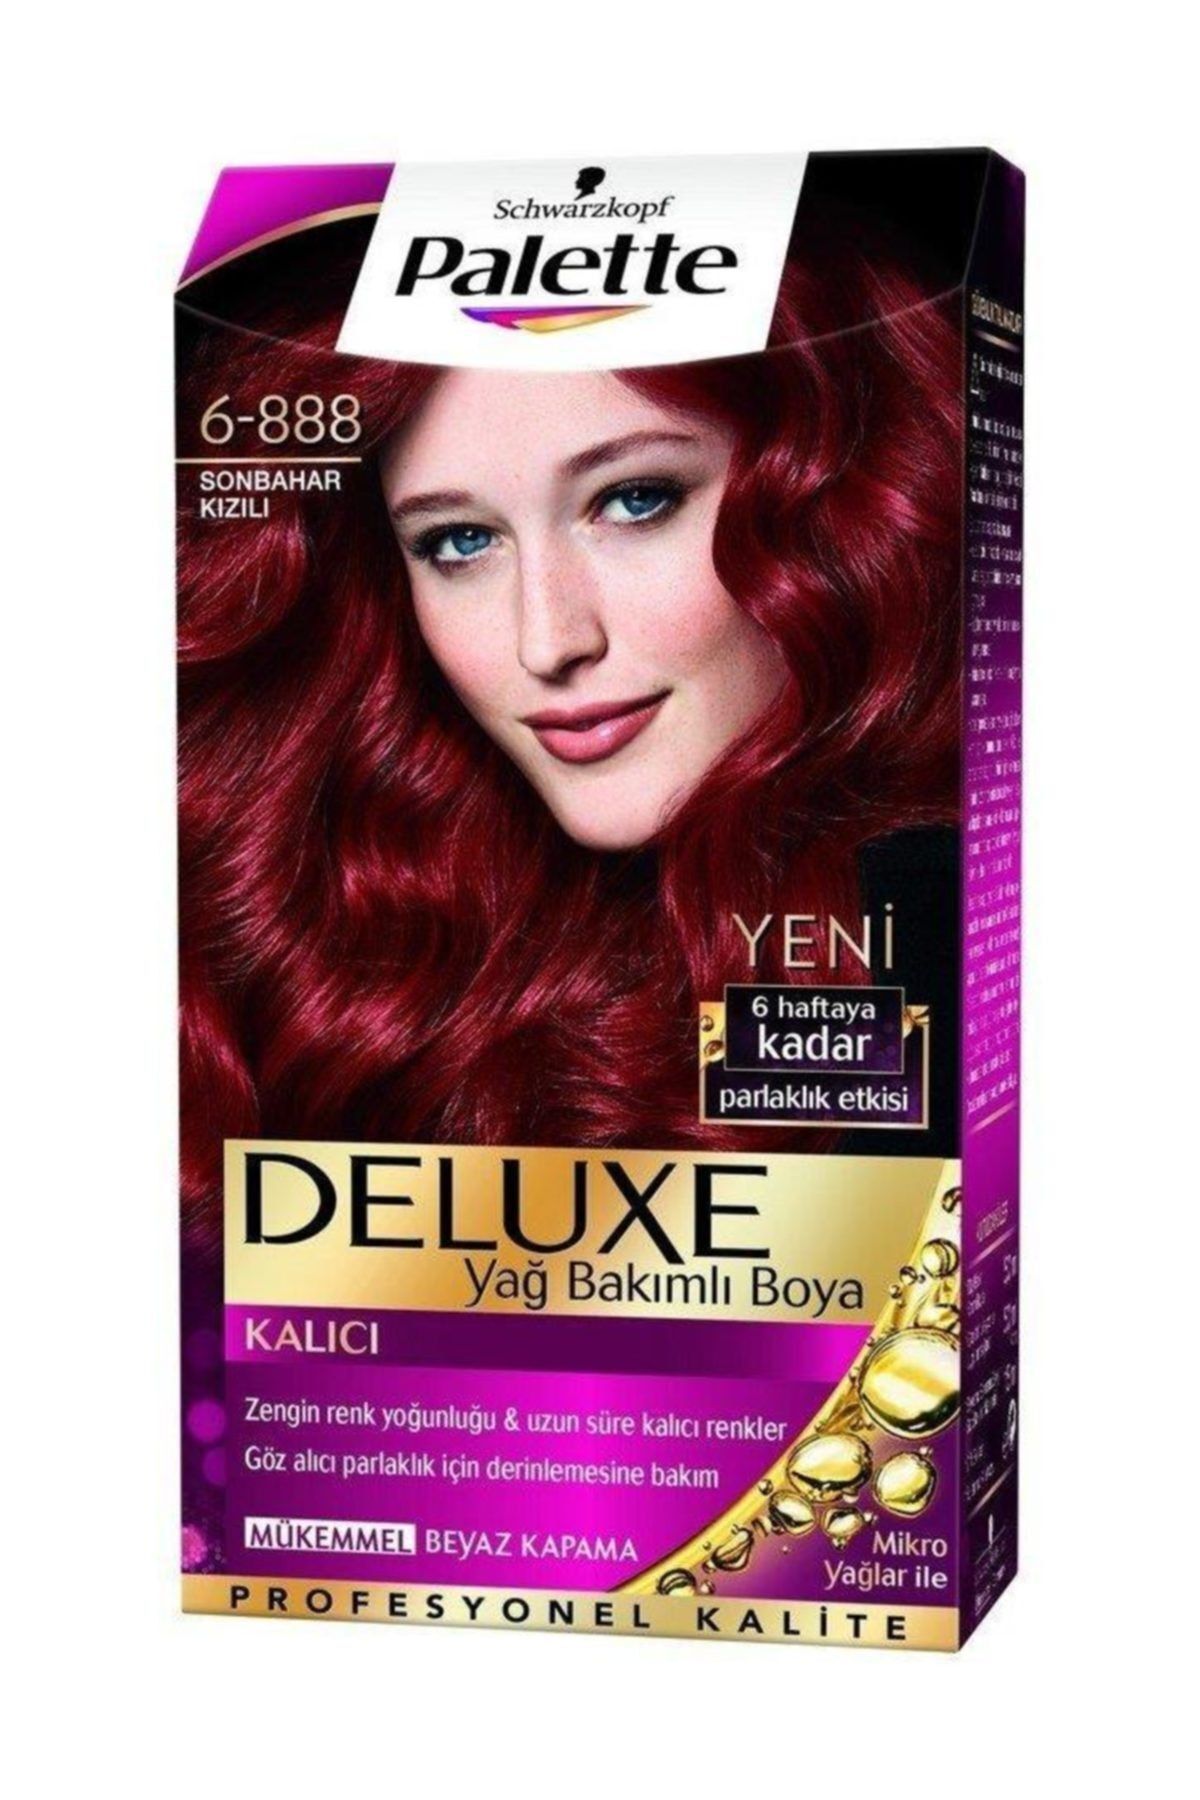 Palette Saç Boyası - Yoğun Göz Alıcı Renk 6-888 Sonbahar Kızılı